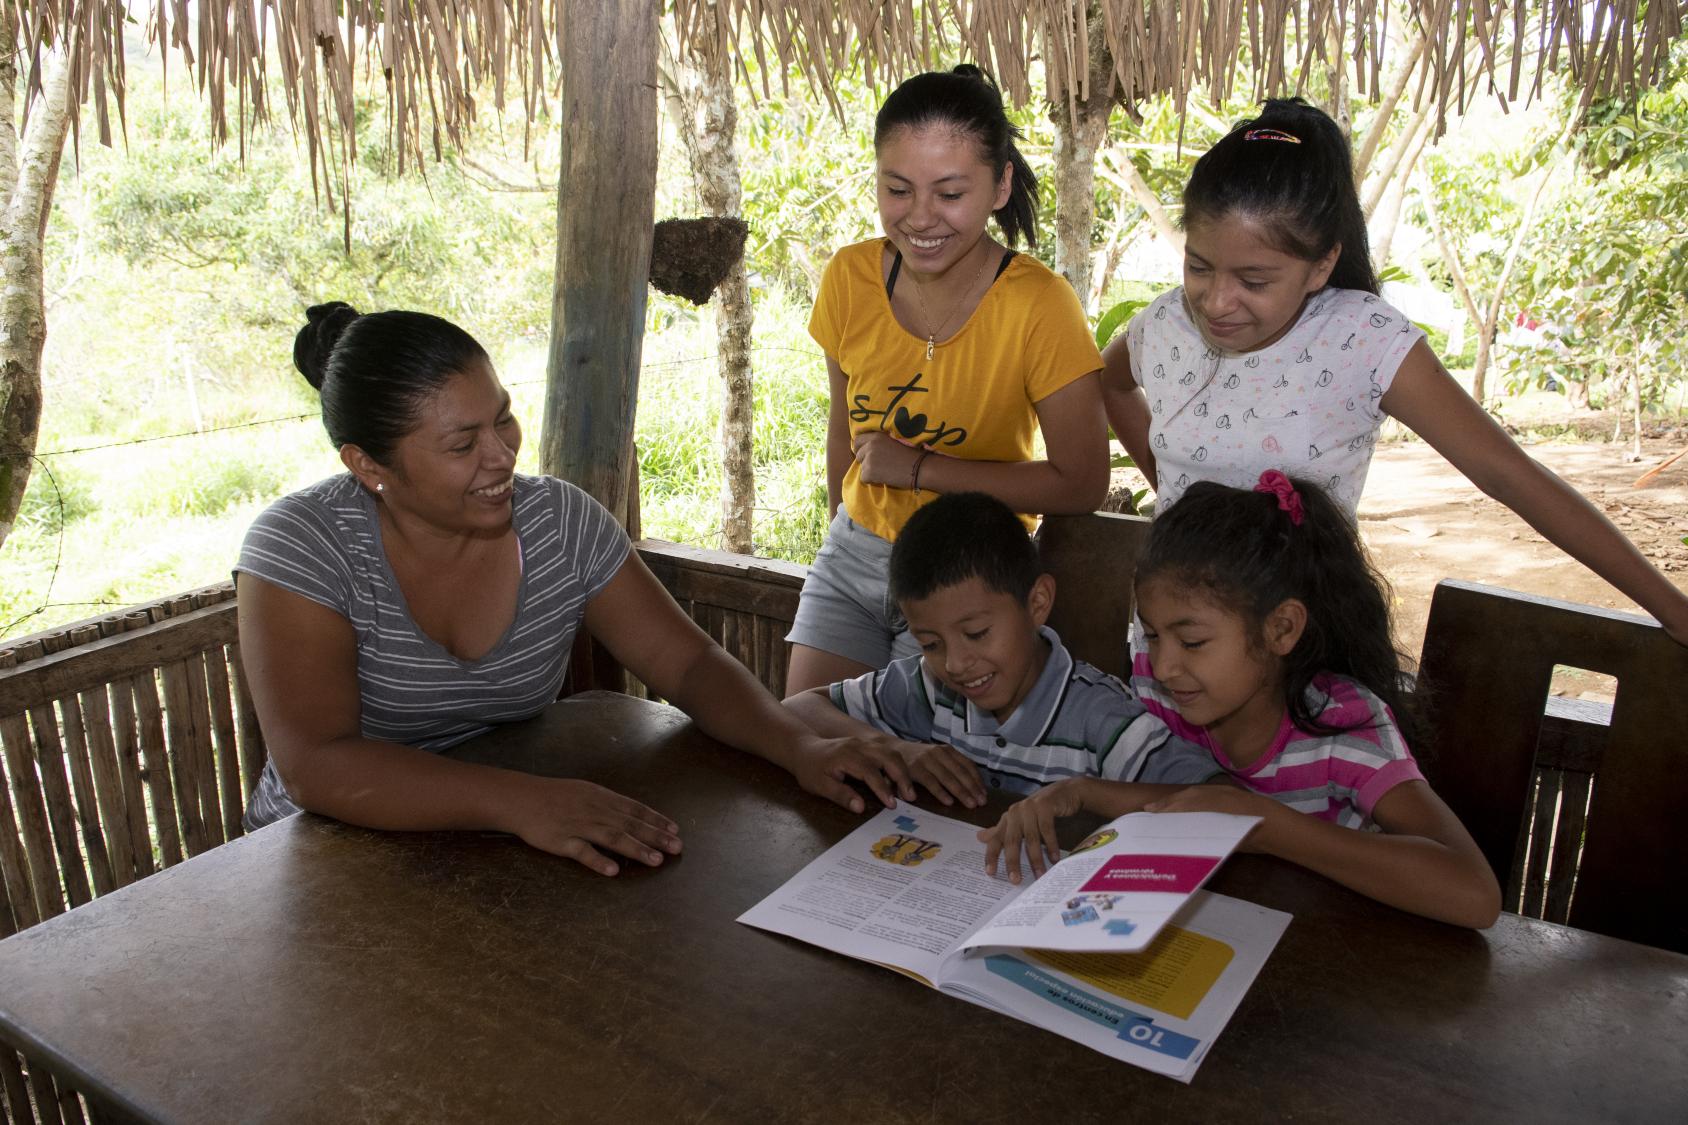 Una madre y sus hijos sonríen mientras trabajan juntos en las tareas escolares.